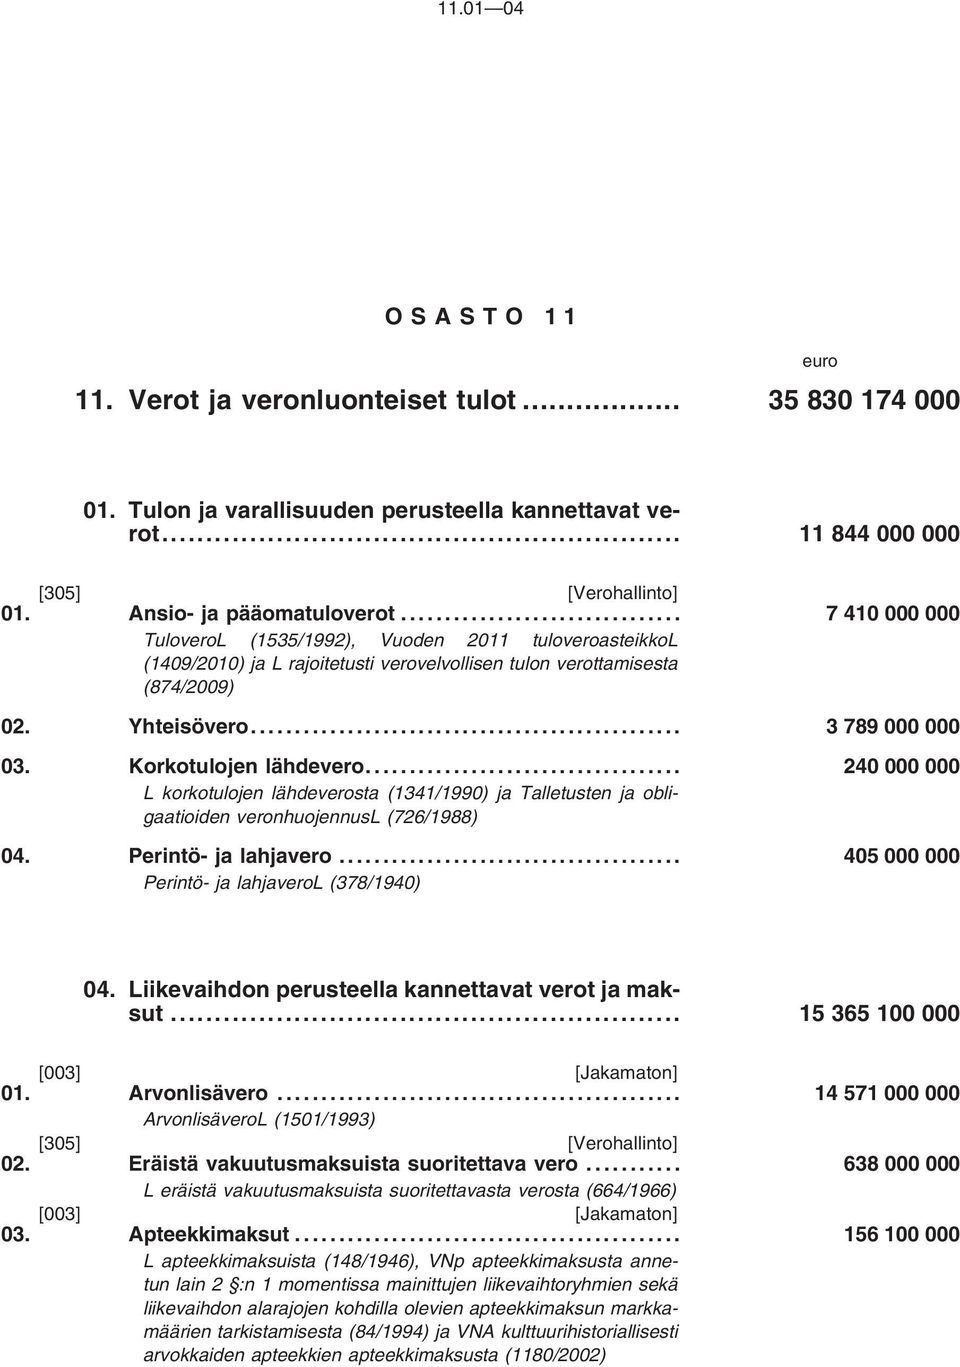 .. 3 789 000 000 03. Korkotulojen lähdevero... 240000000 L korkotulojen lähdeverosta (1341/1990) ja Talletusten ja obligaatioiden veronhuojennusl (726/1988) 04. Perintö- ja lahjavero.